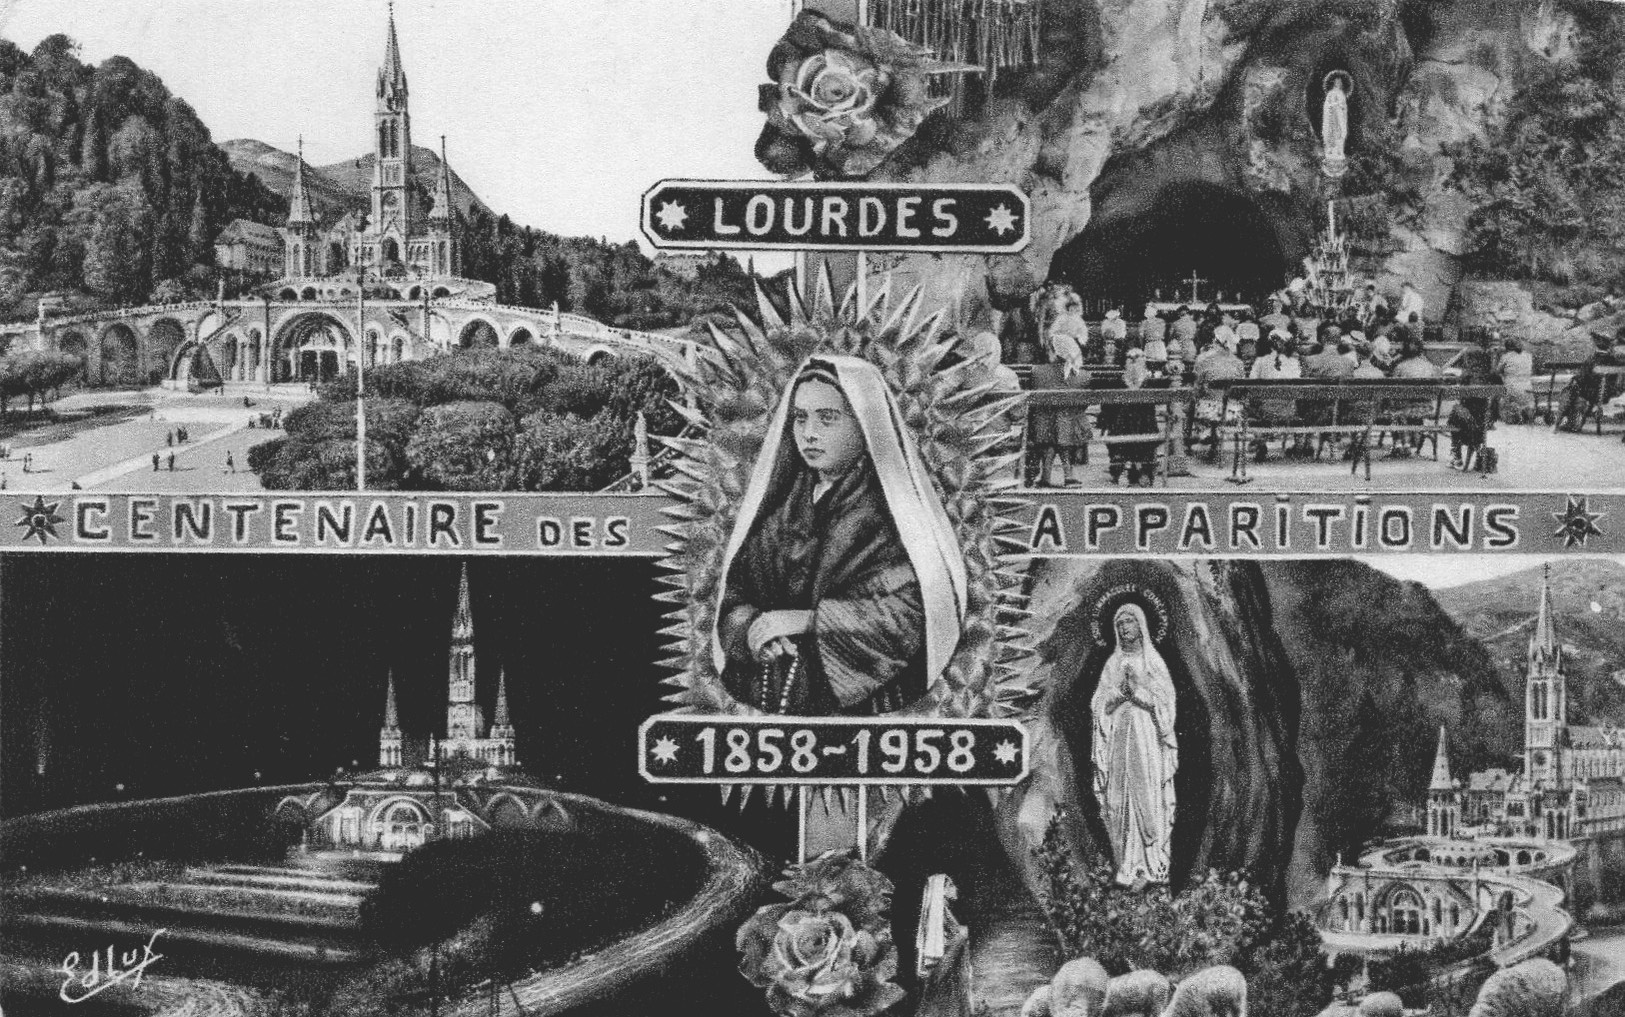 About Lourdes Grottos – Lourdes Grottos of North America